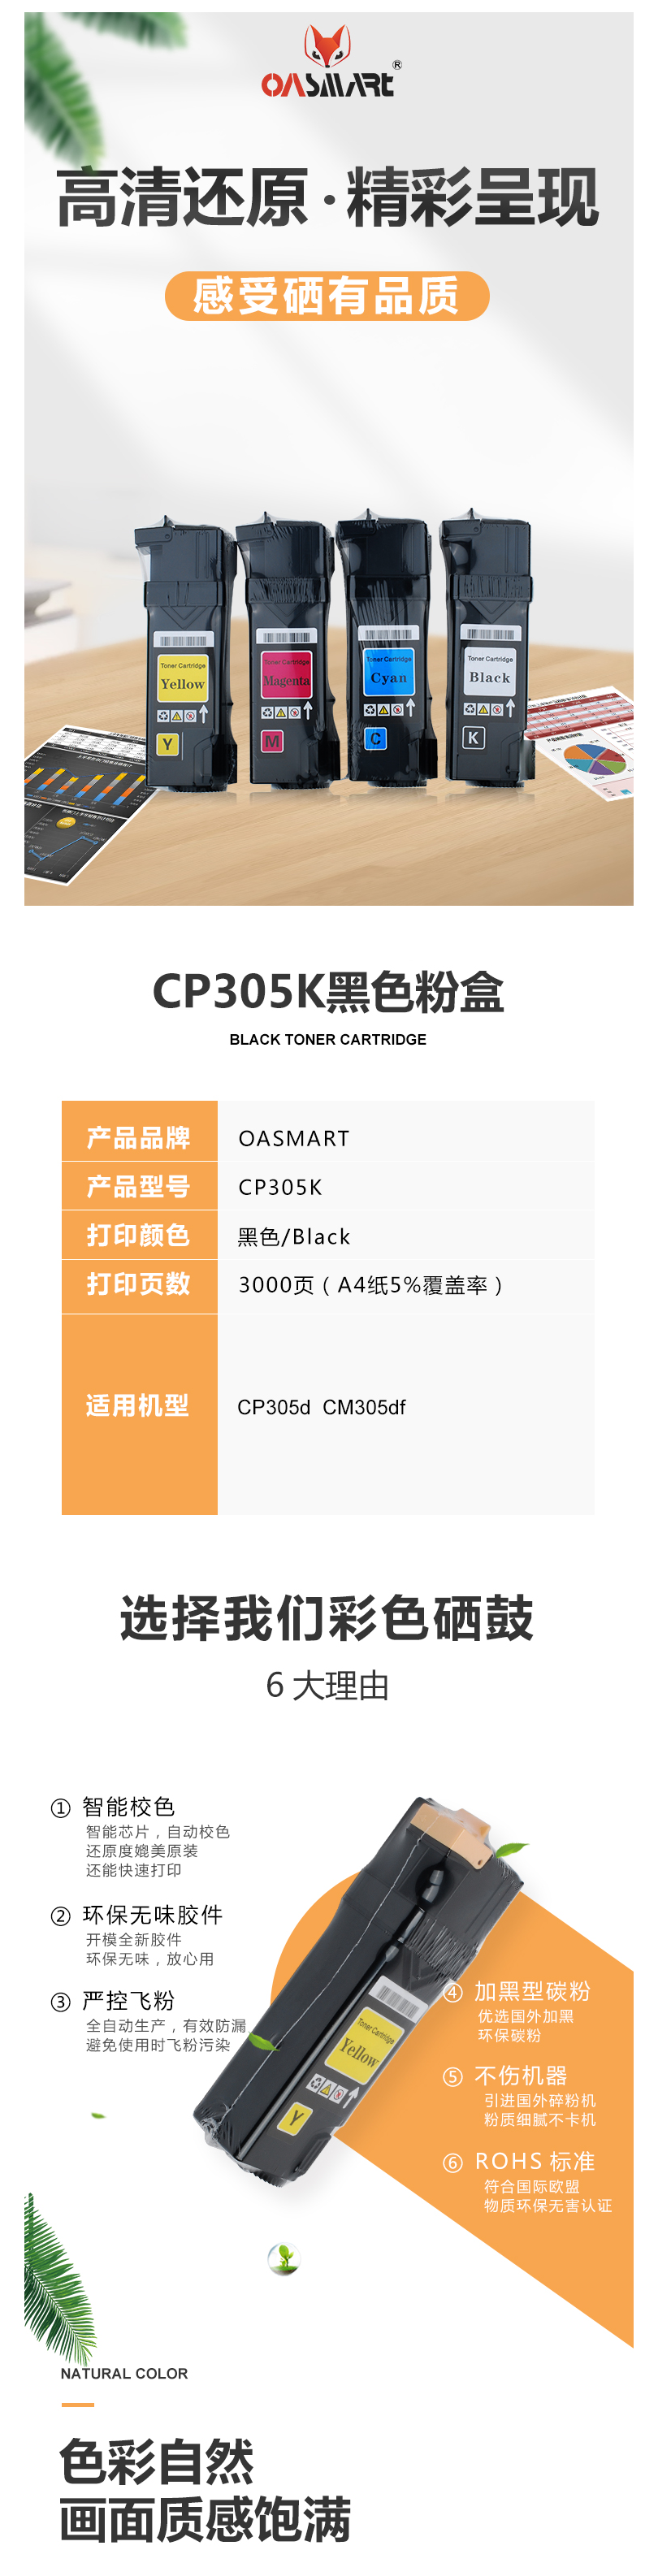 FireShot Capture 425 - 【OASMARTCP305K】OASMART（欧司特）CP305 K 黑_ - https___item.jd.com_100009293617.html.png